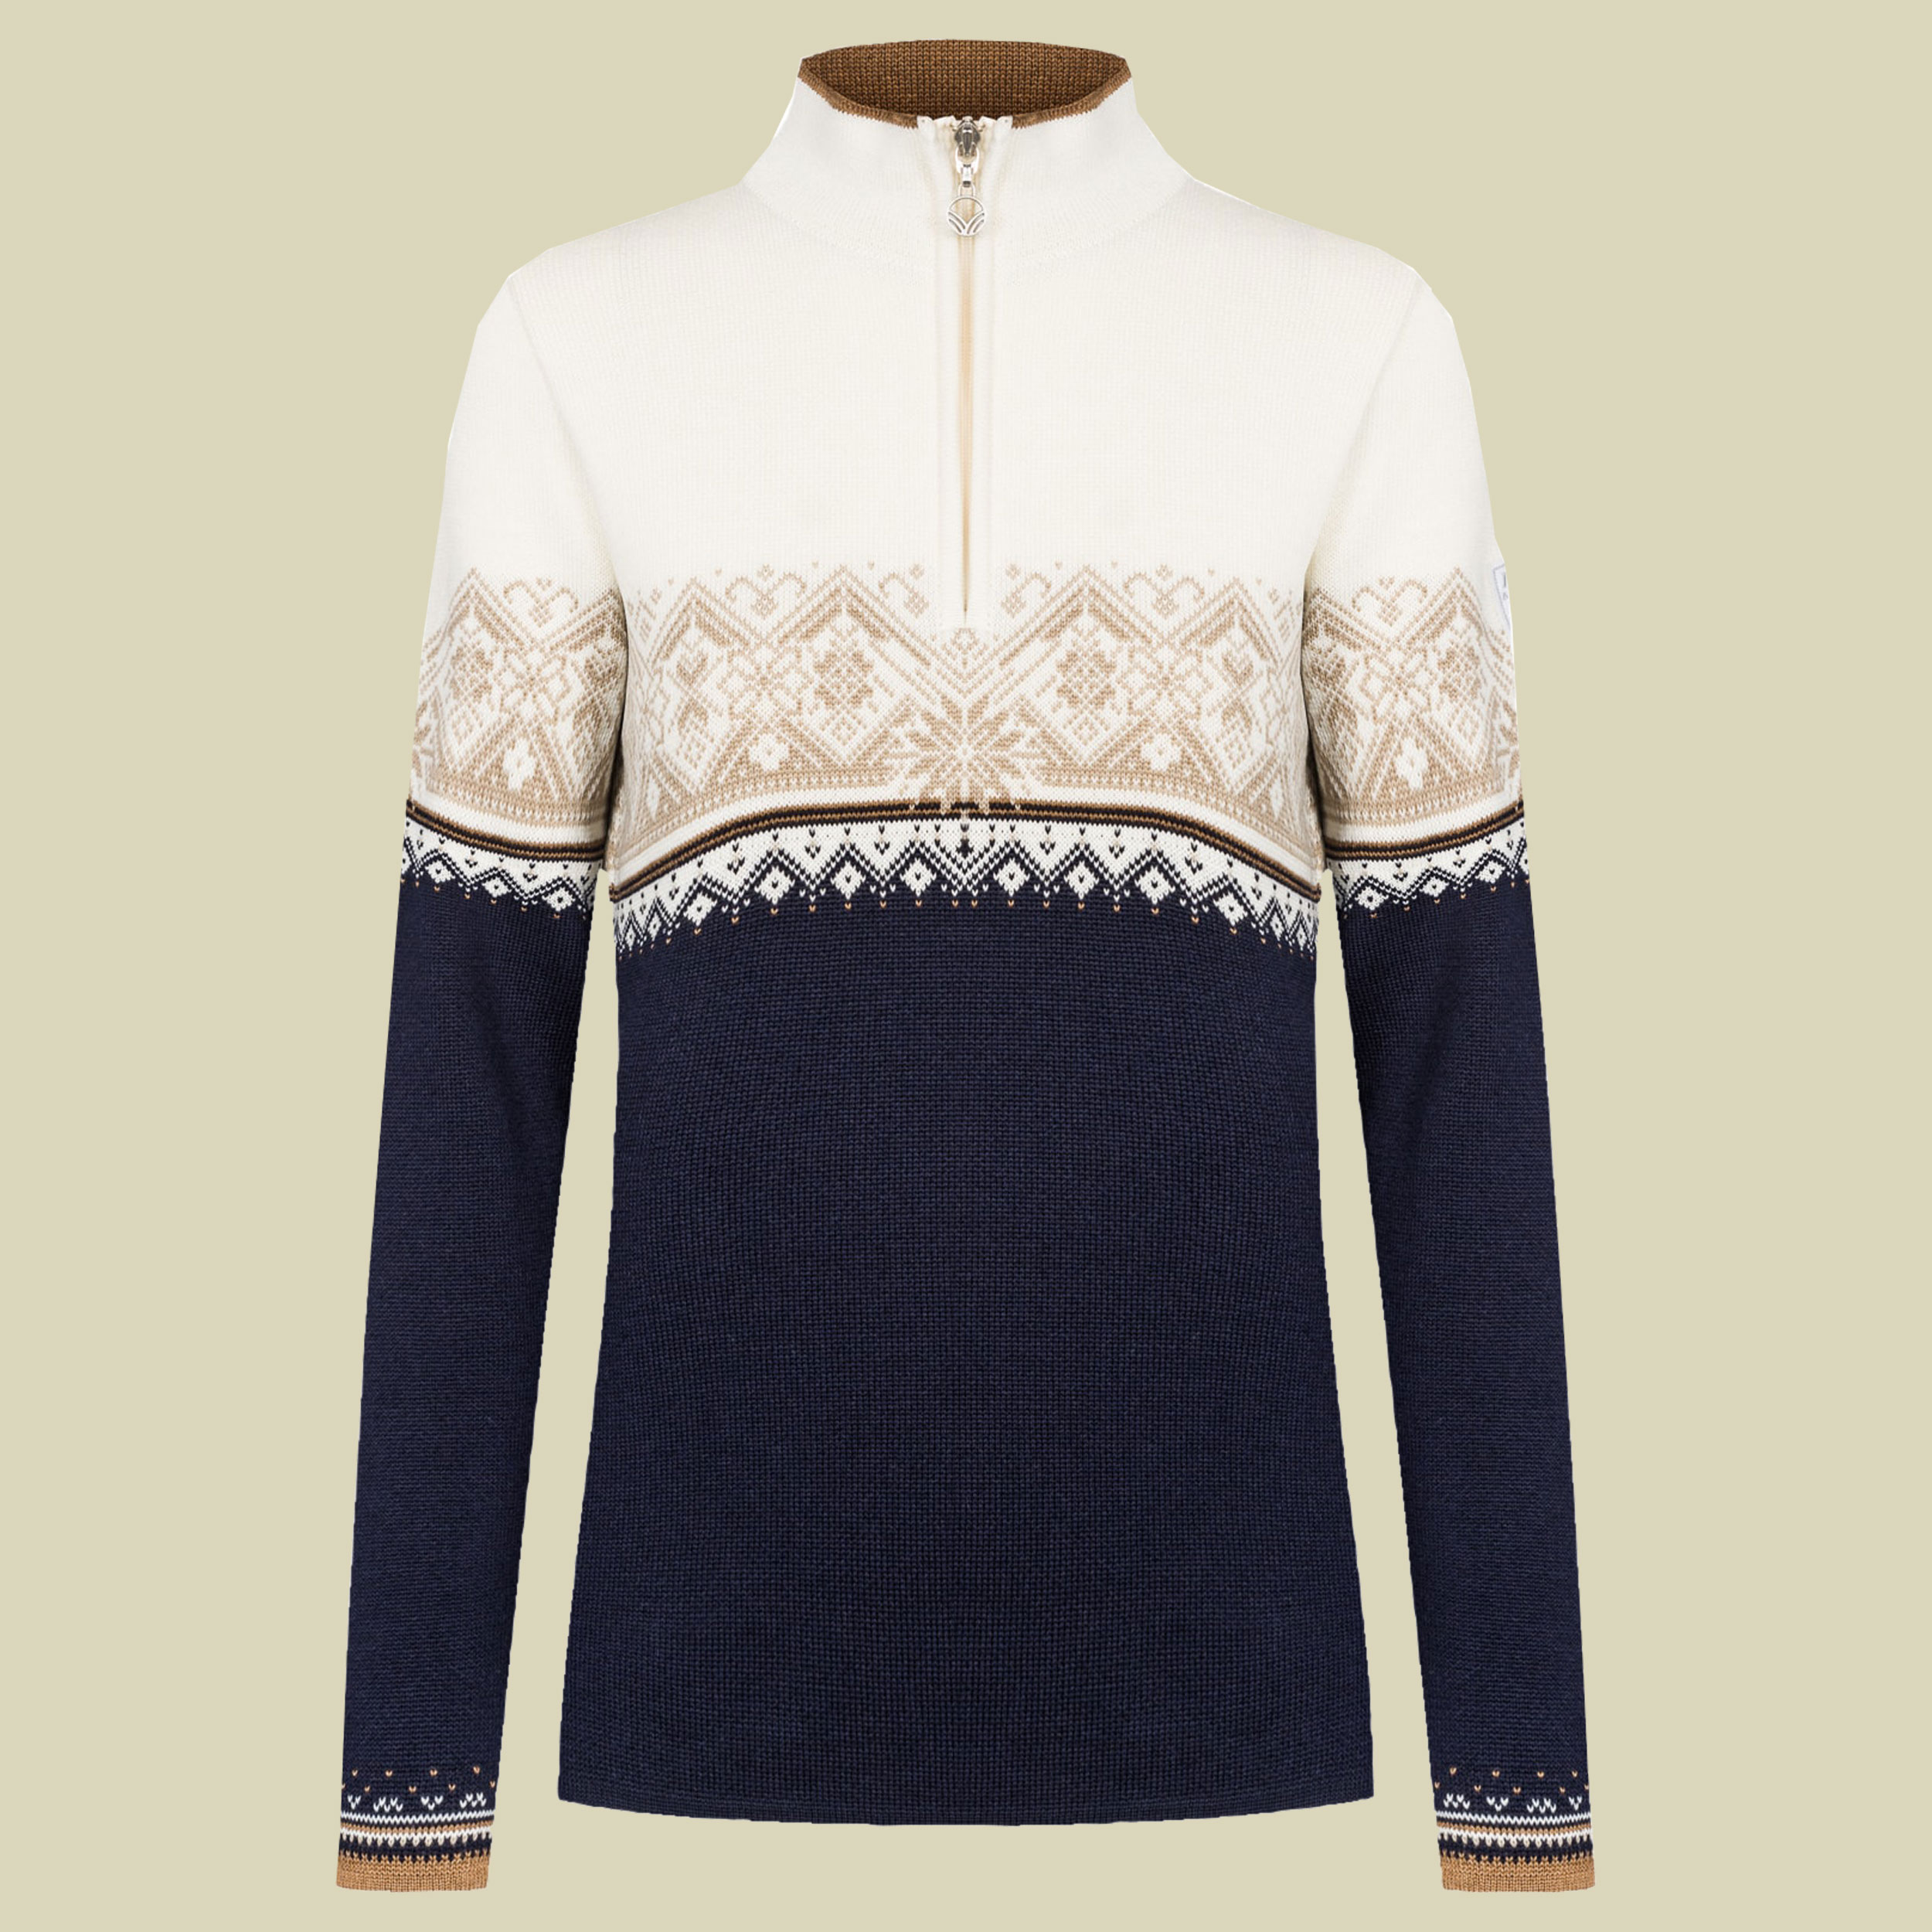 Moritz Sweater Women Größe XL Farbe navy-bronze-beige-off white